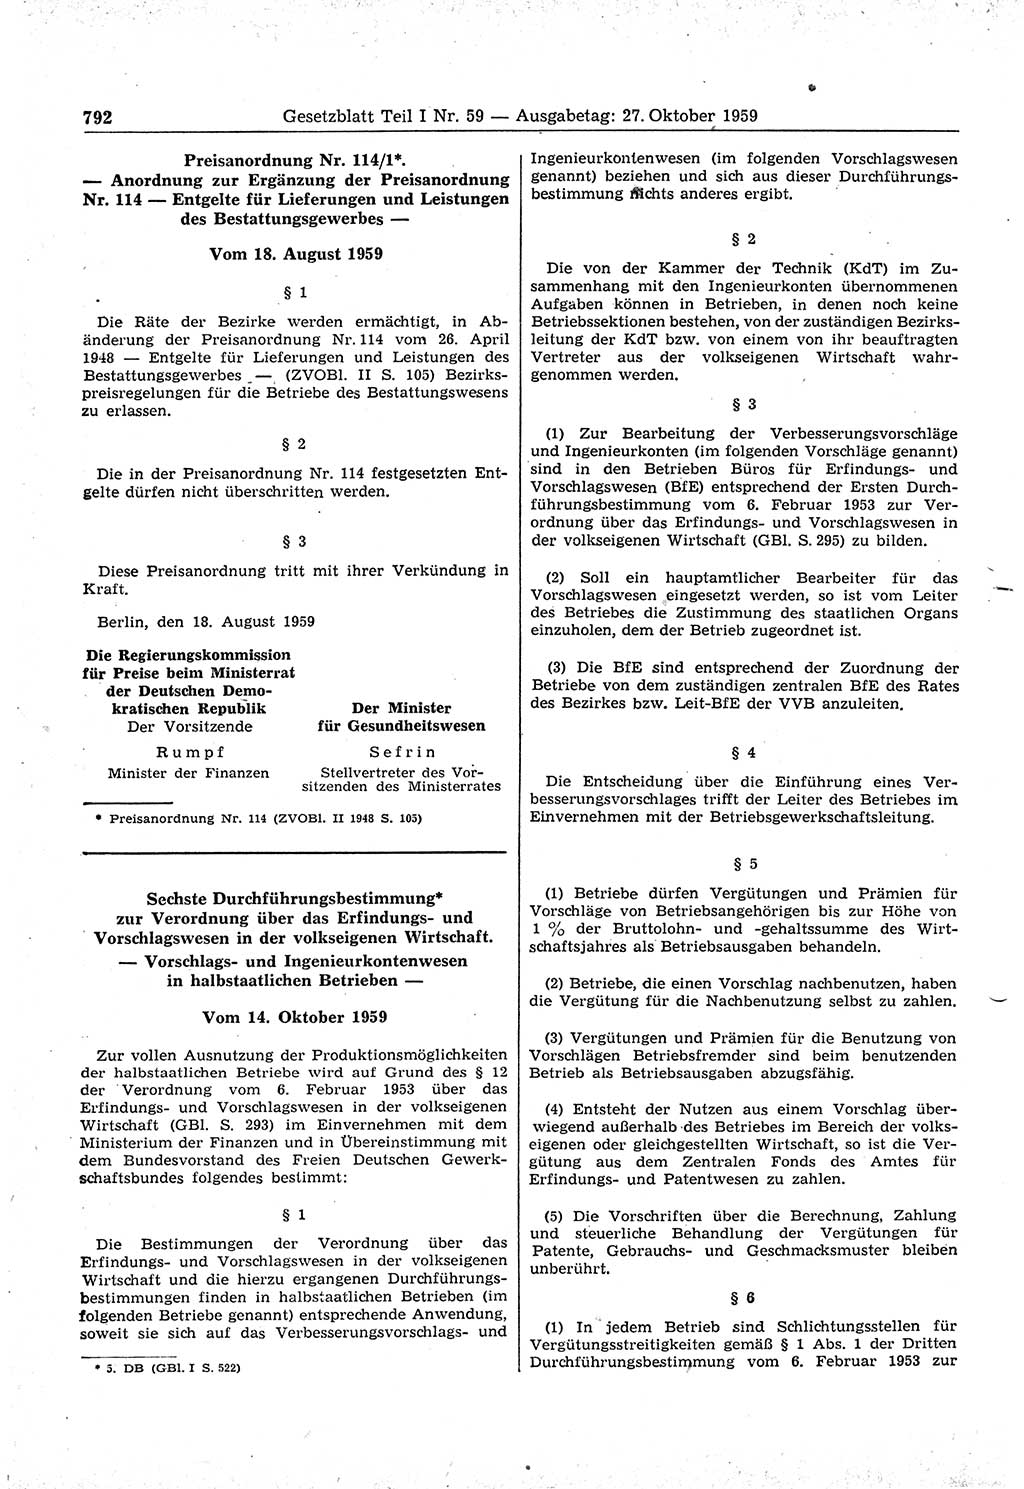 Gesetzblatt (GBl.) der Deutschen Demokratischen Republik (DDR) Teil Ⅰ 1959, Seite 792 (GBl. DDR Ⅰ 1959, S. 792)